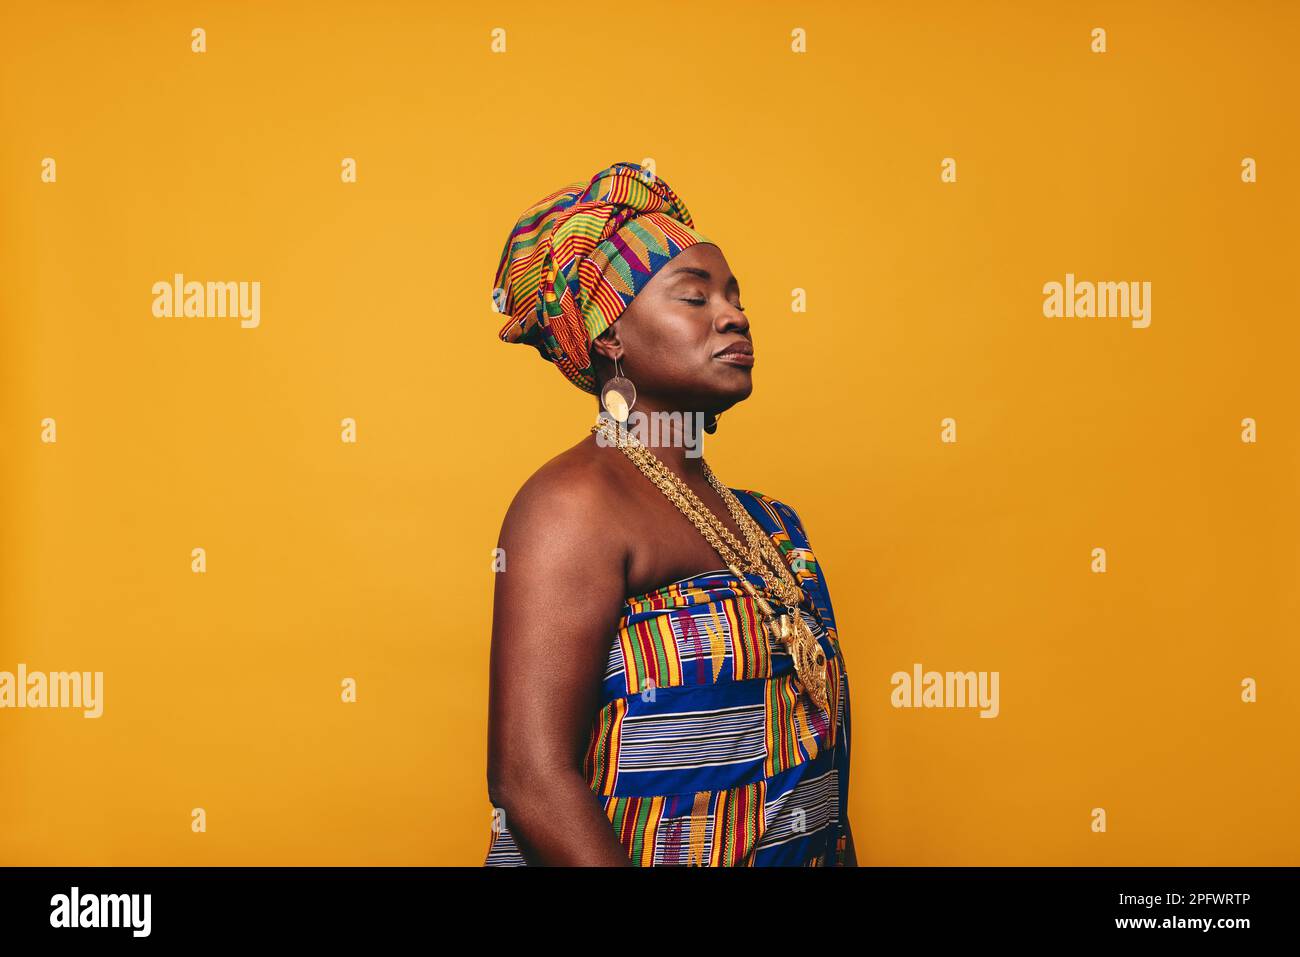 Femme mature portant une tenue traditionnelle africaine sur fond jaune. Femme noire confiante vêtue de tissu Kente coloré et de bijoux dorés Banque D'Images